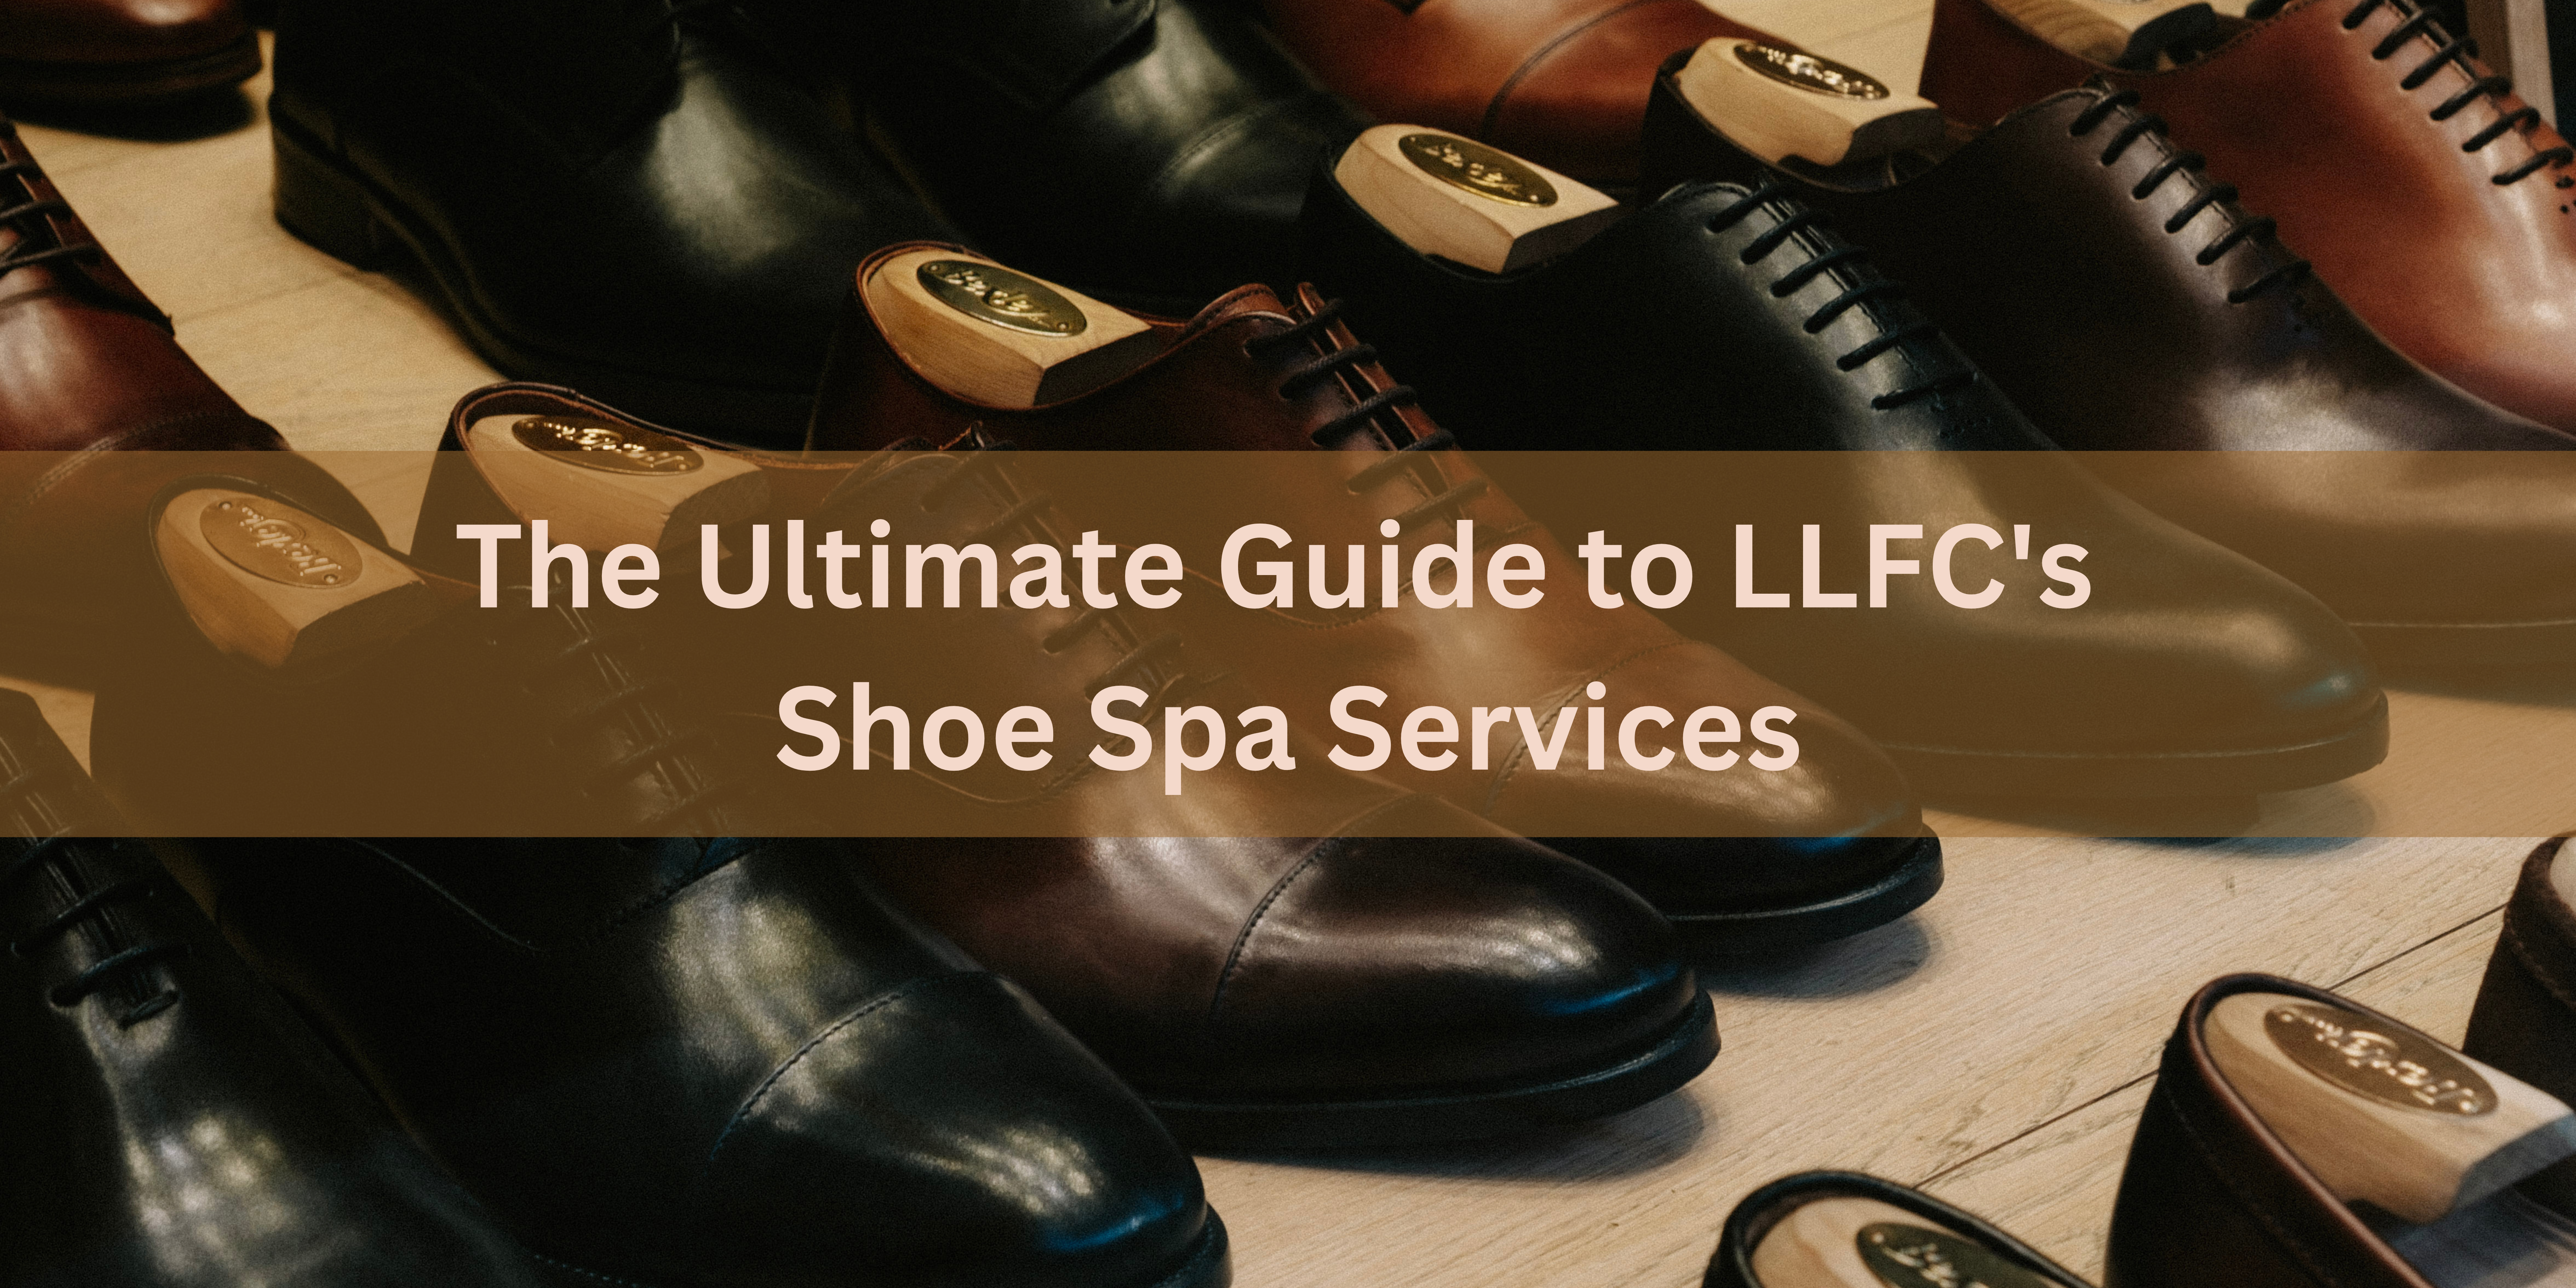 Shoe Spa Services